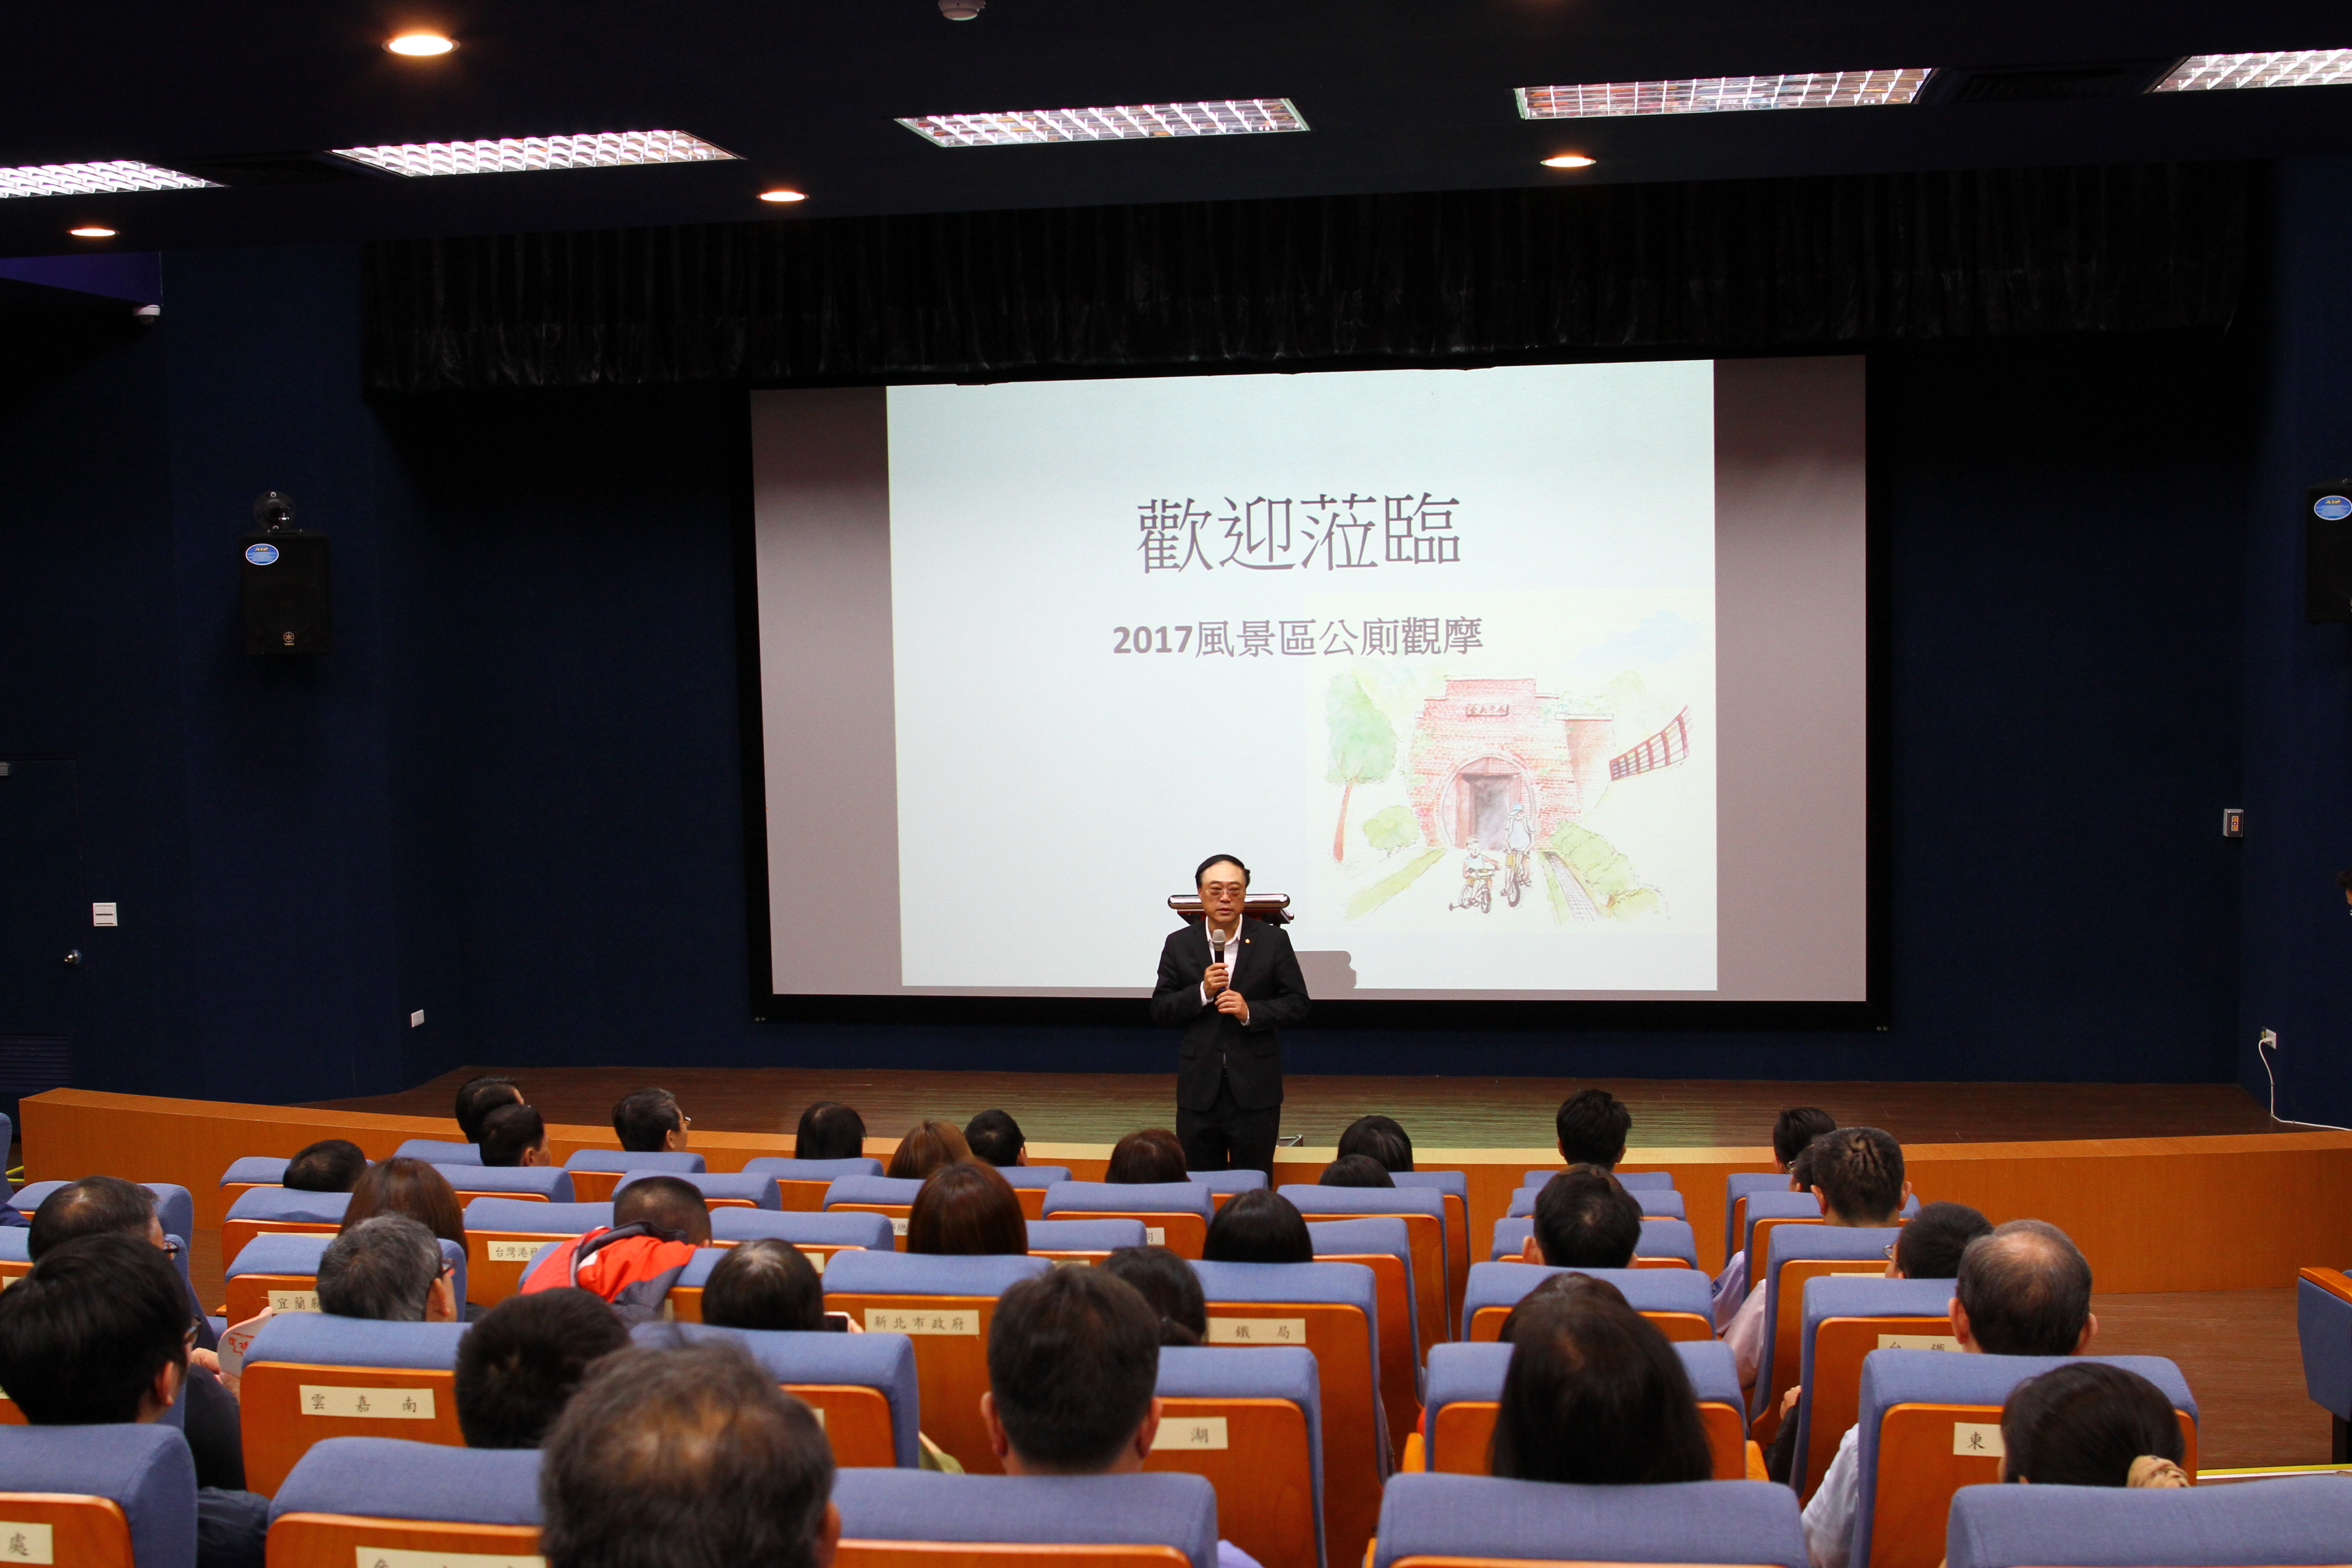 Giám đốc Sở Du lịch, ông Zhou Yonghui, khuyến khích các cơ quan quản lý quản lý nhà vệ sinh công cộng với khái niệm 6S.